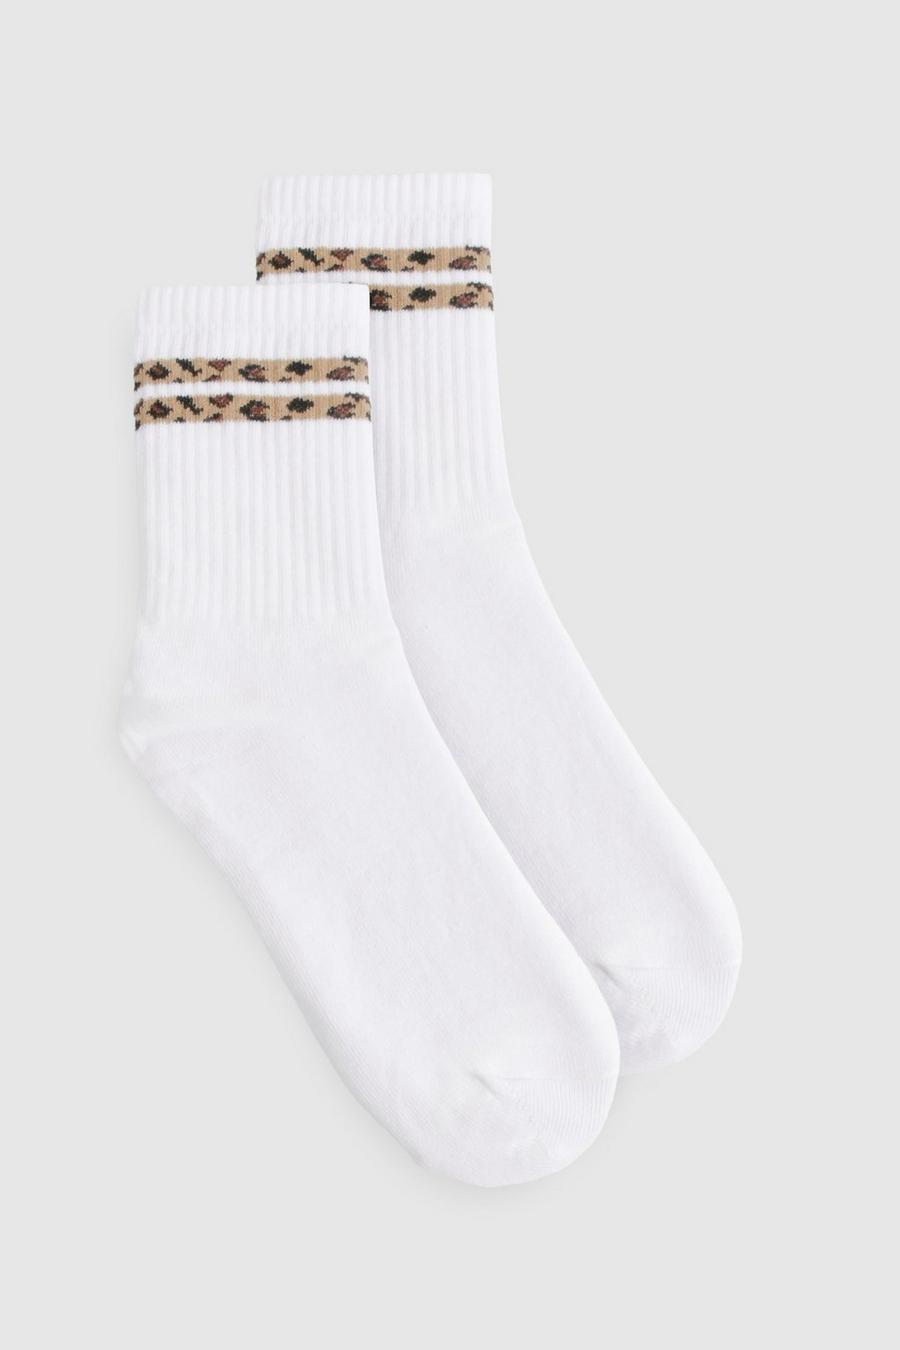 Leopardenprint Socken mit doppelten Streifen, Leopard